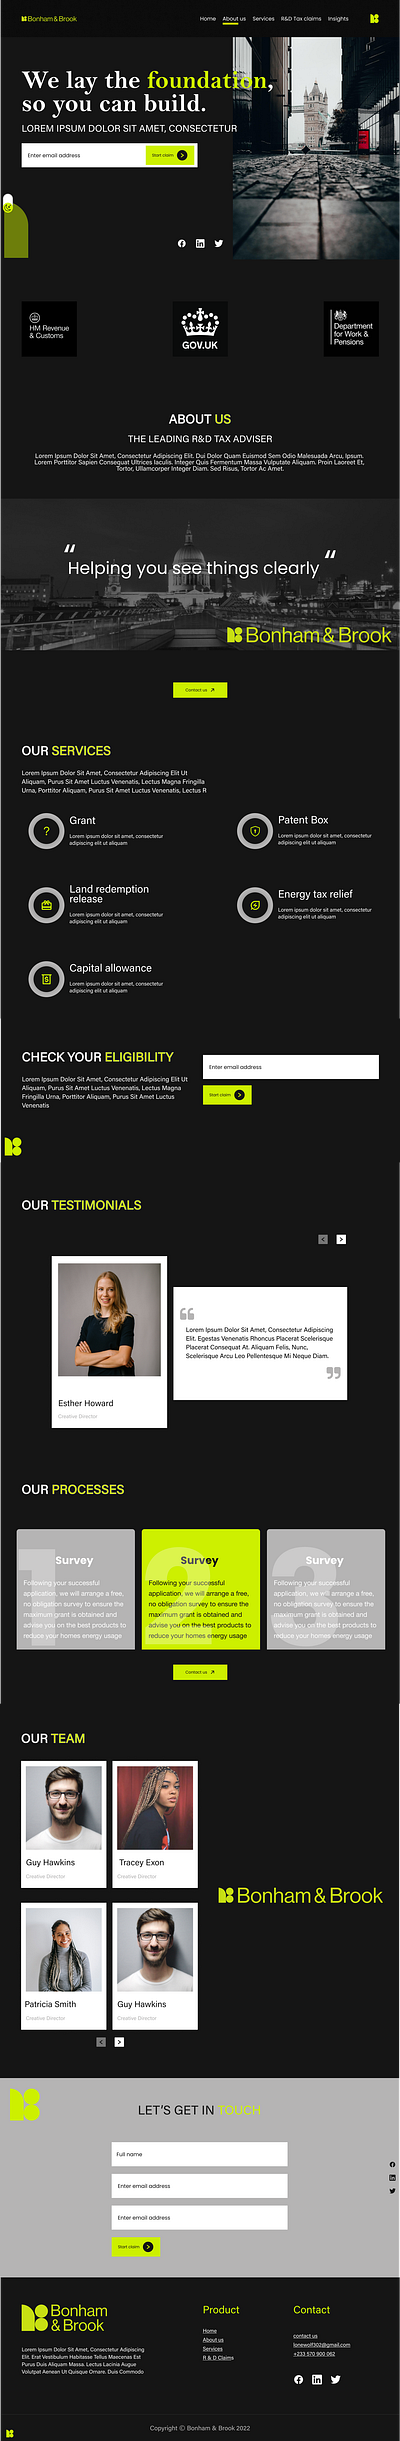 Design concept for a professional website by Teamalfy design illustration logo minimal saas design ux